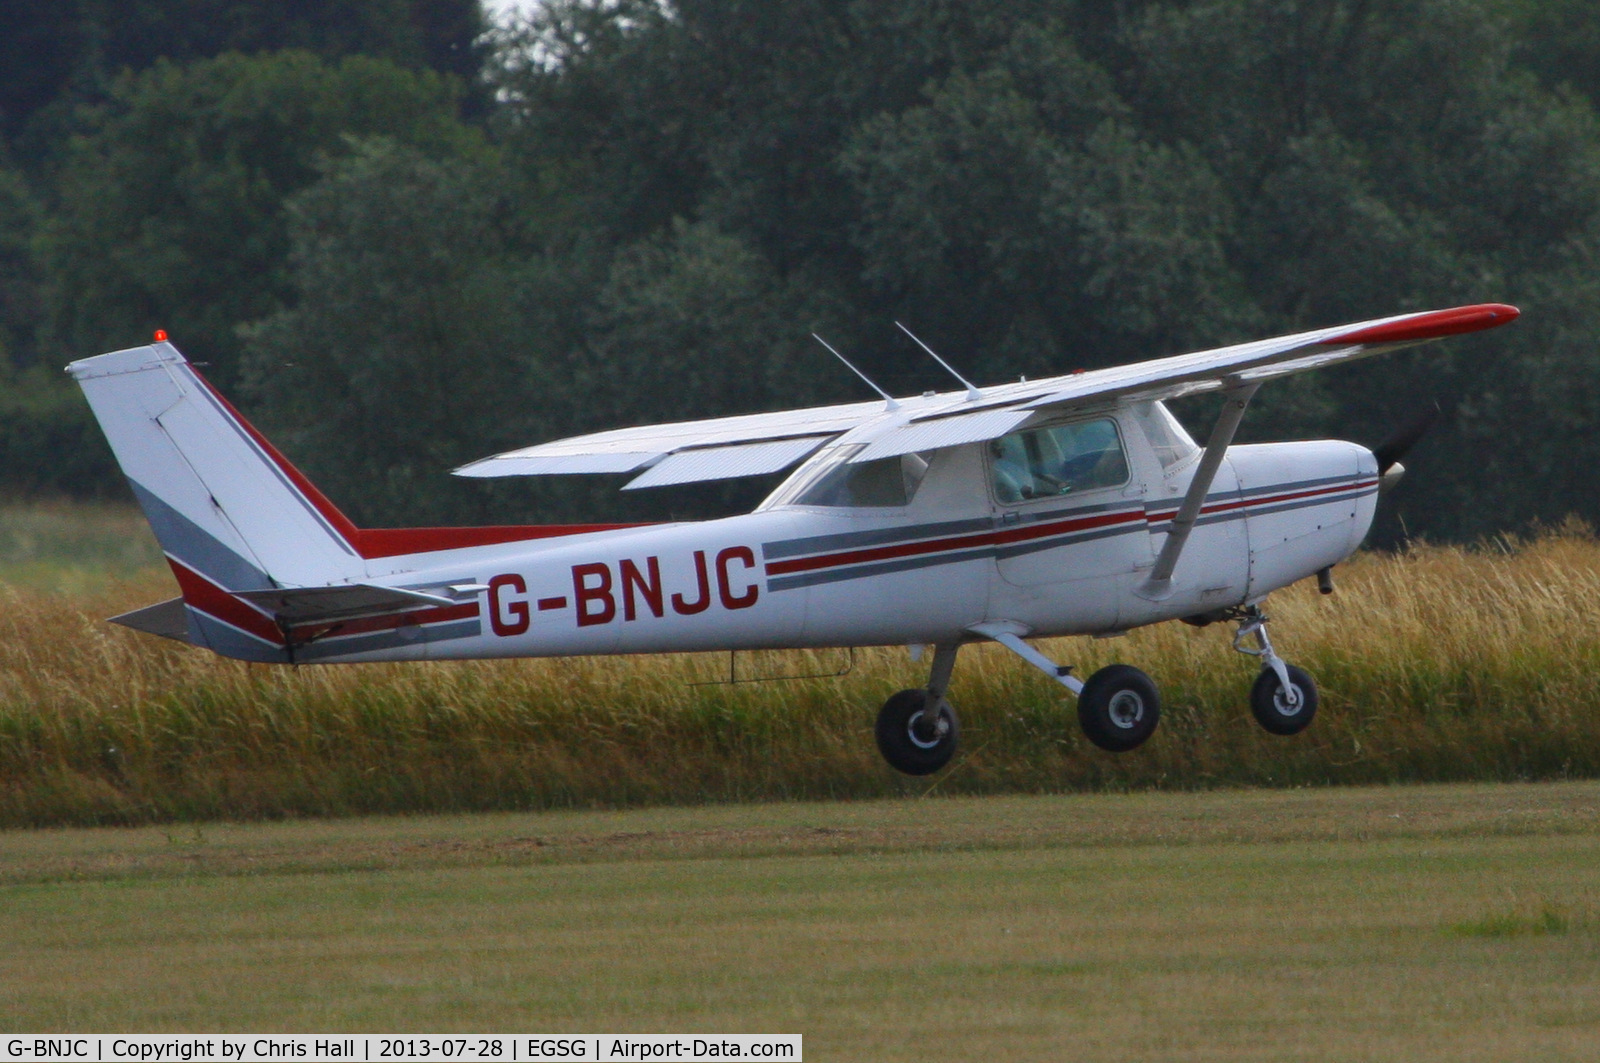 G-BNJC, 1979 Cessna 152 C/N 152-83588, Stapleford Flying Club